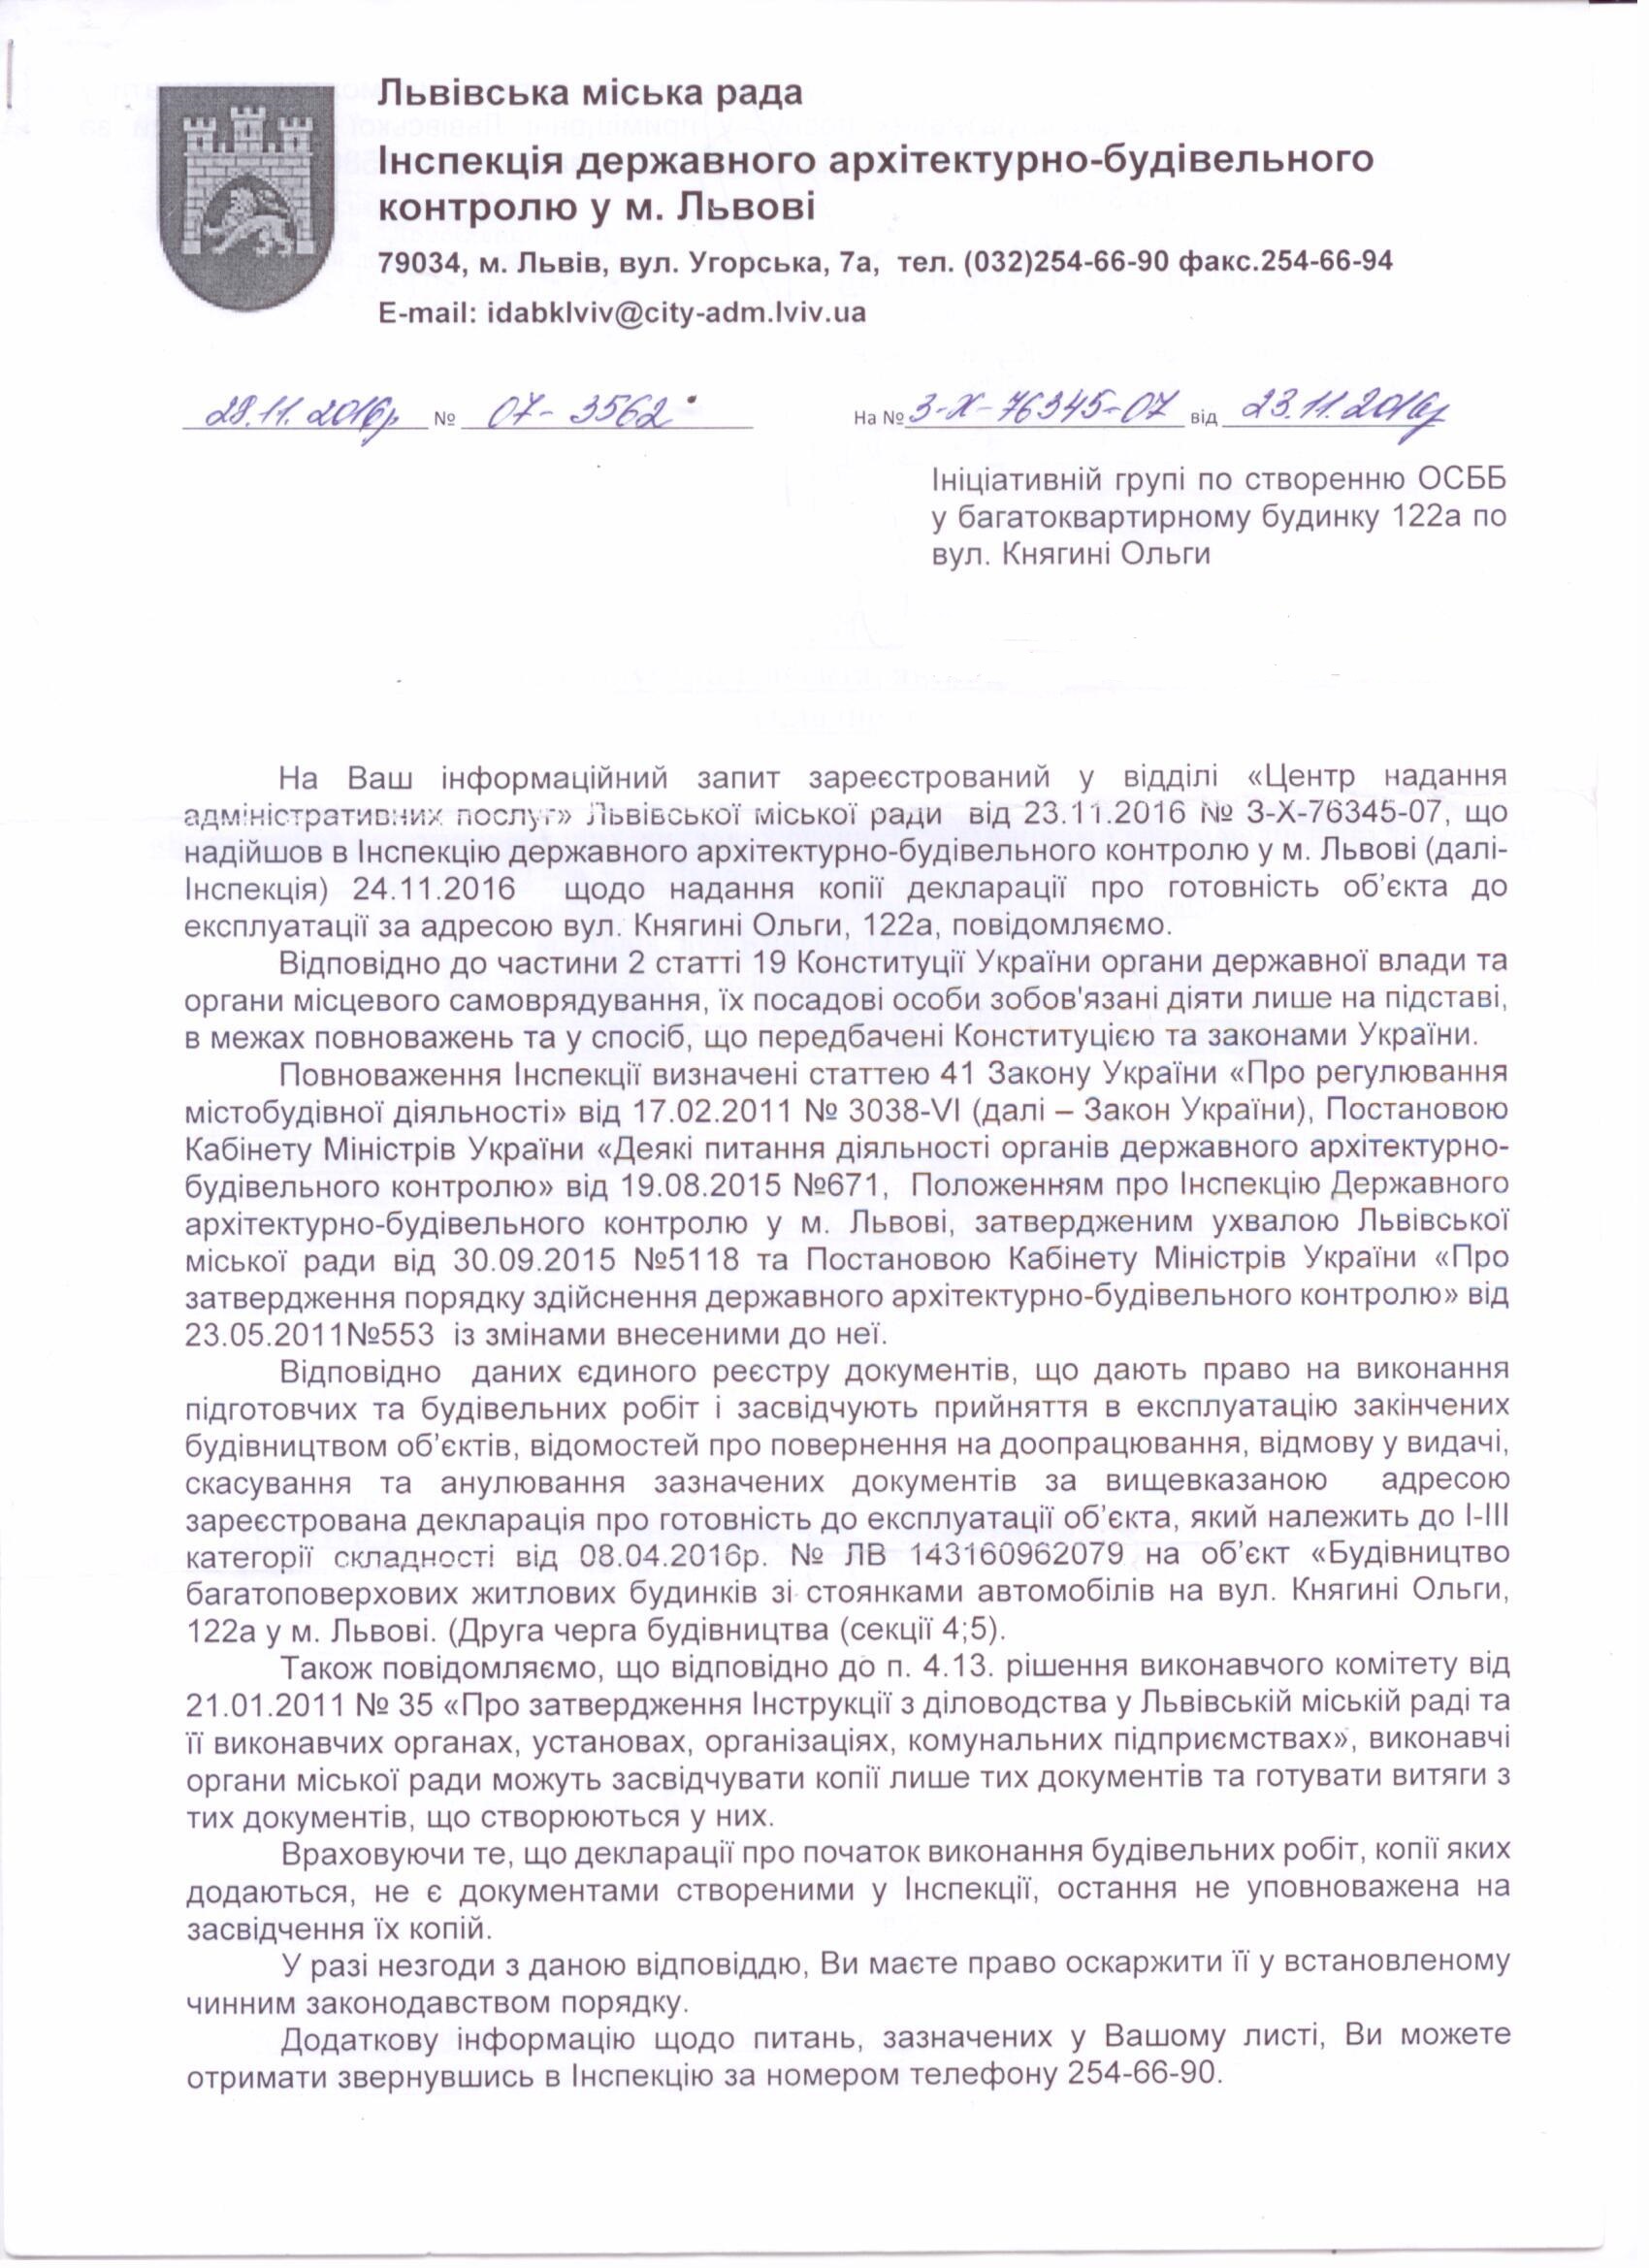 Відповідь на запит про декларацію завершення будівництва від Інспекції державного архітектурно-будівельного контролю м. Львова